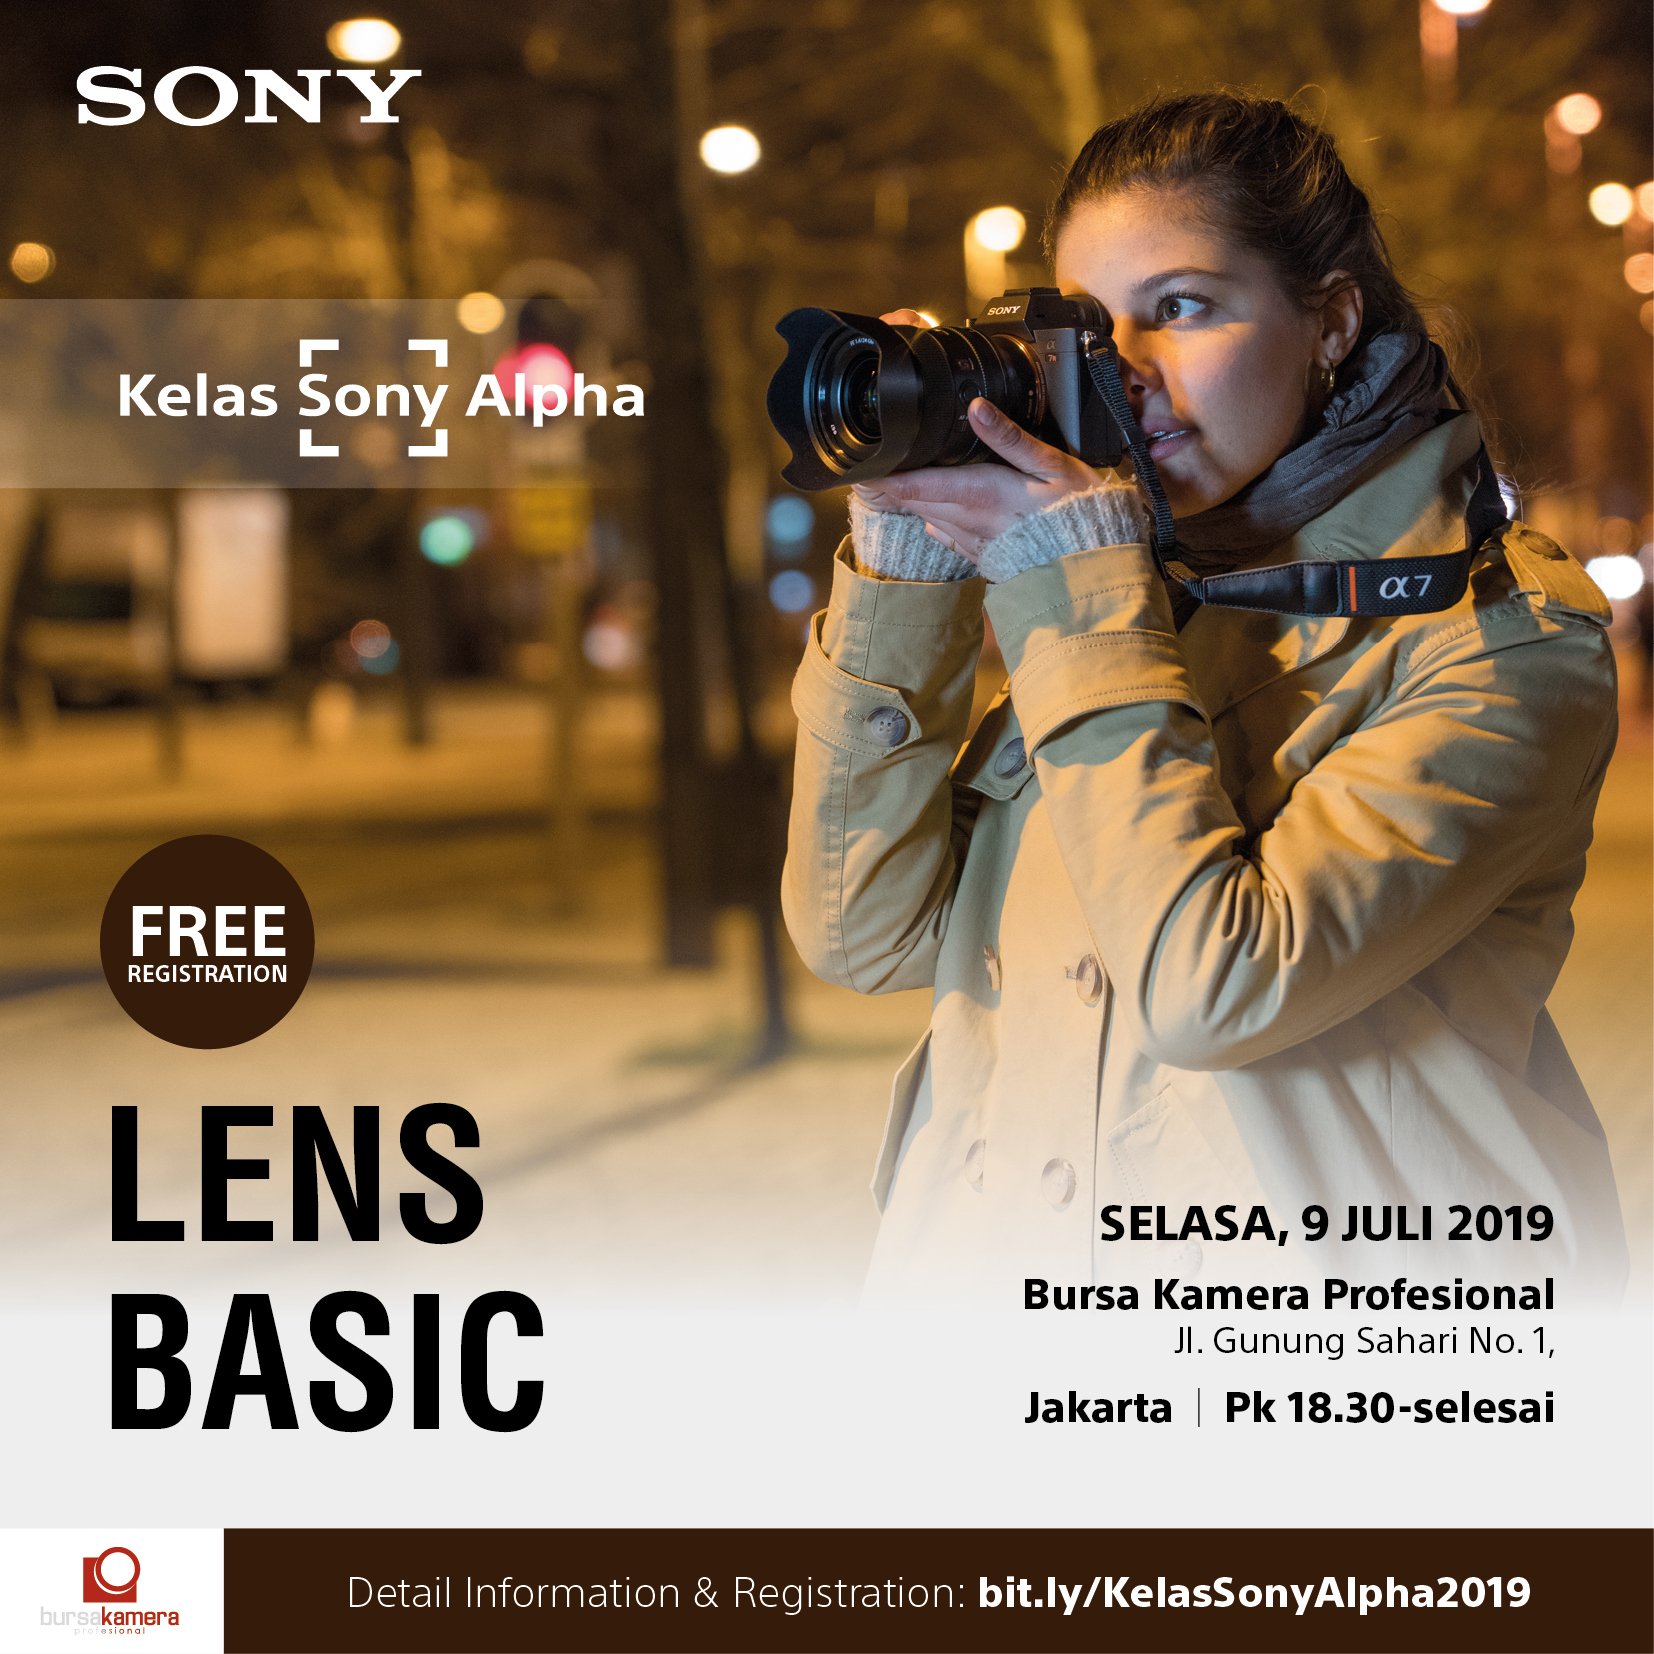 Kelas Sony Alpha (KSA) Basic Lens